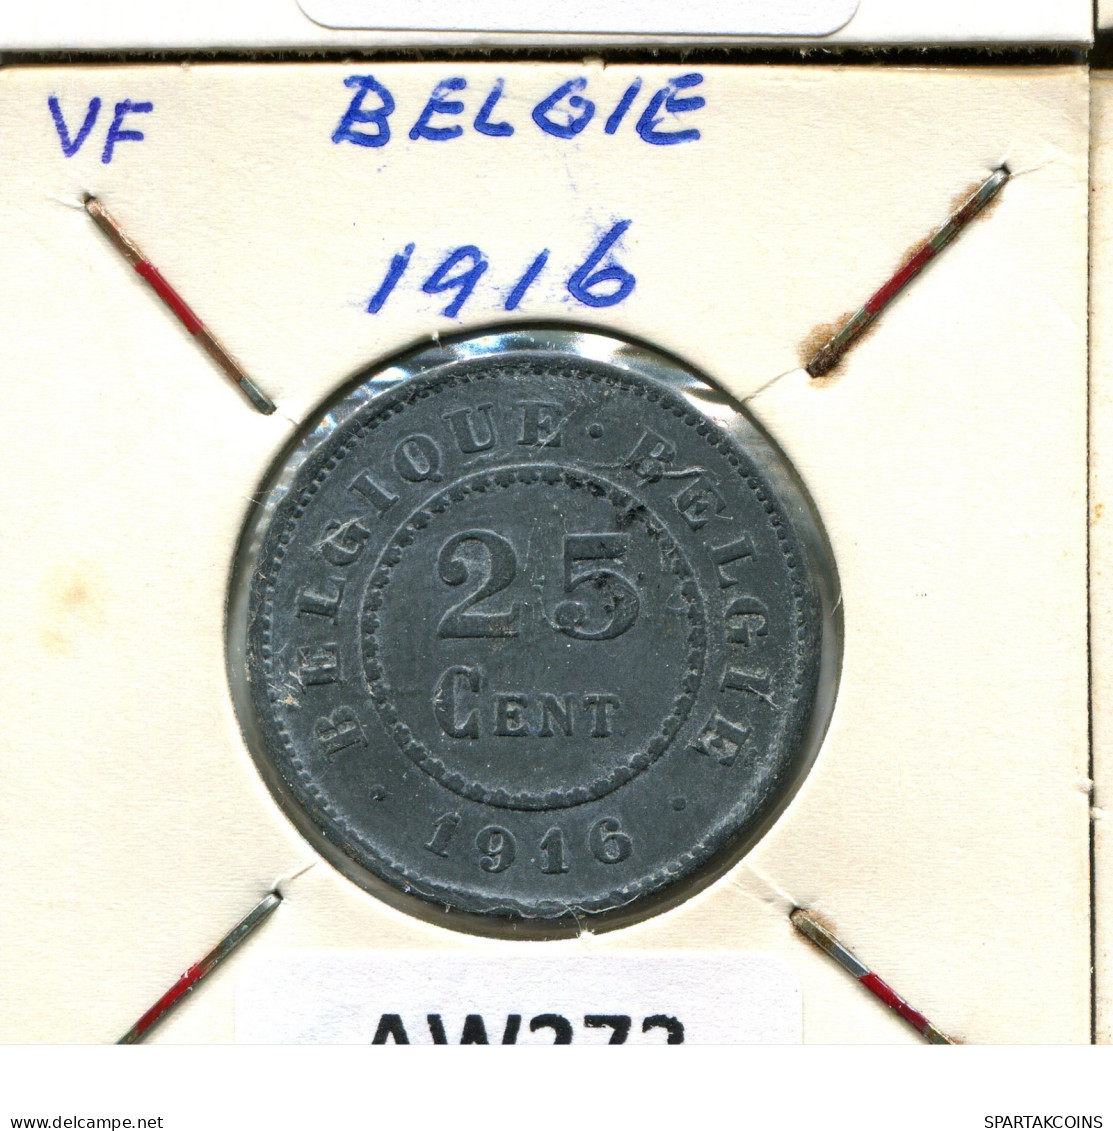 25 CENTIMES 1916 BELGIQUE-BELGIE BELGIEN BELGIUM Münze #AW272.D.A - 25 Centimes